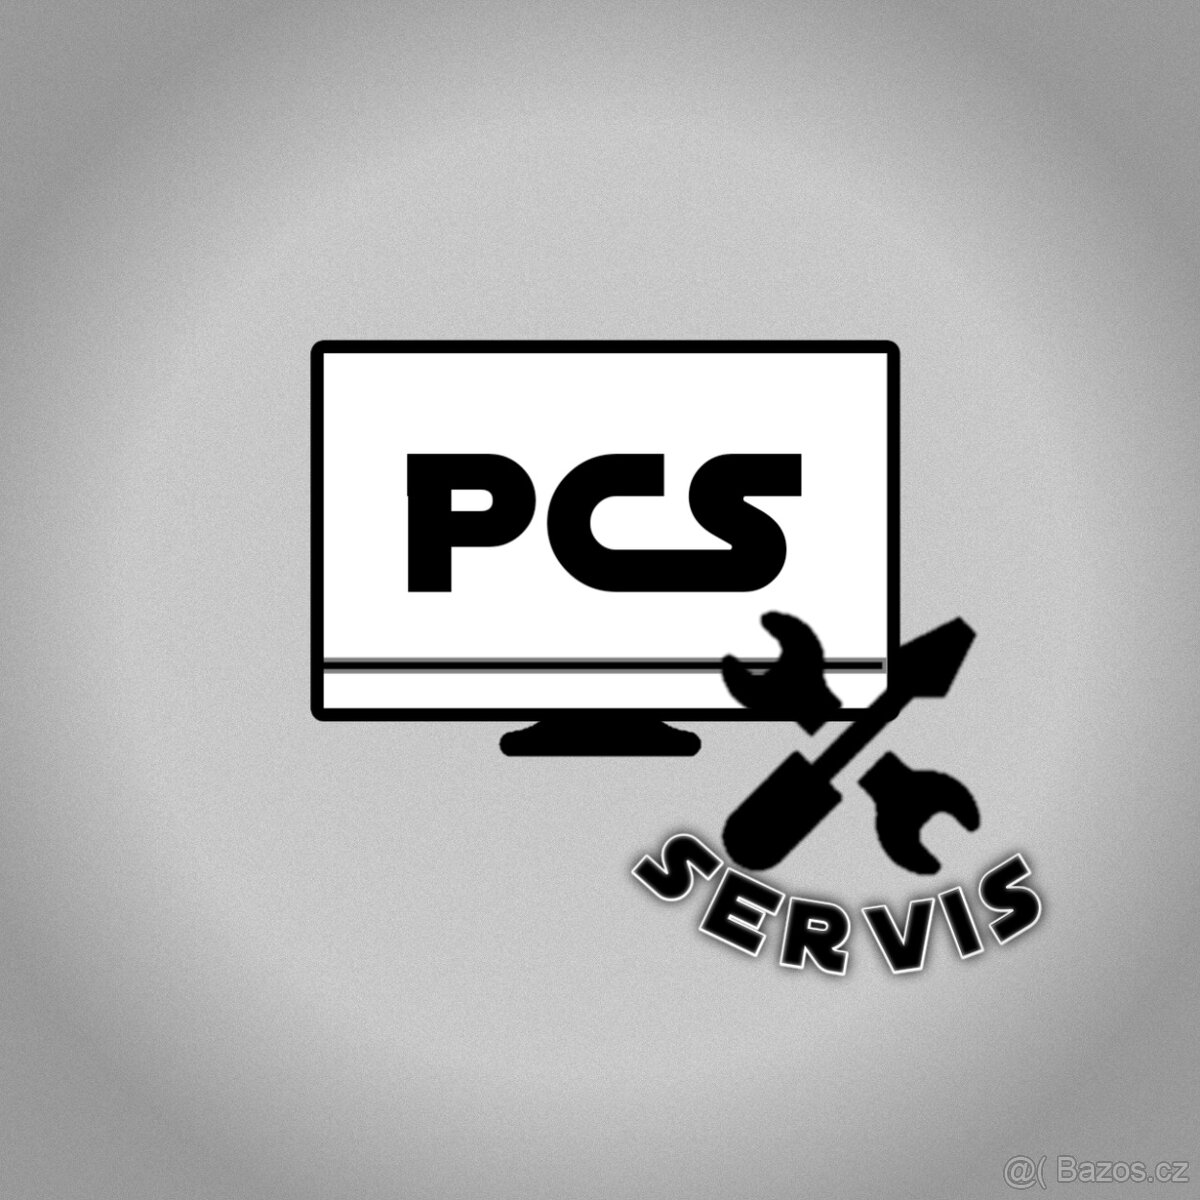 PCS servis a čištění počítačů